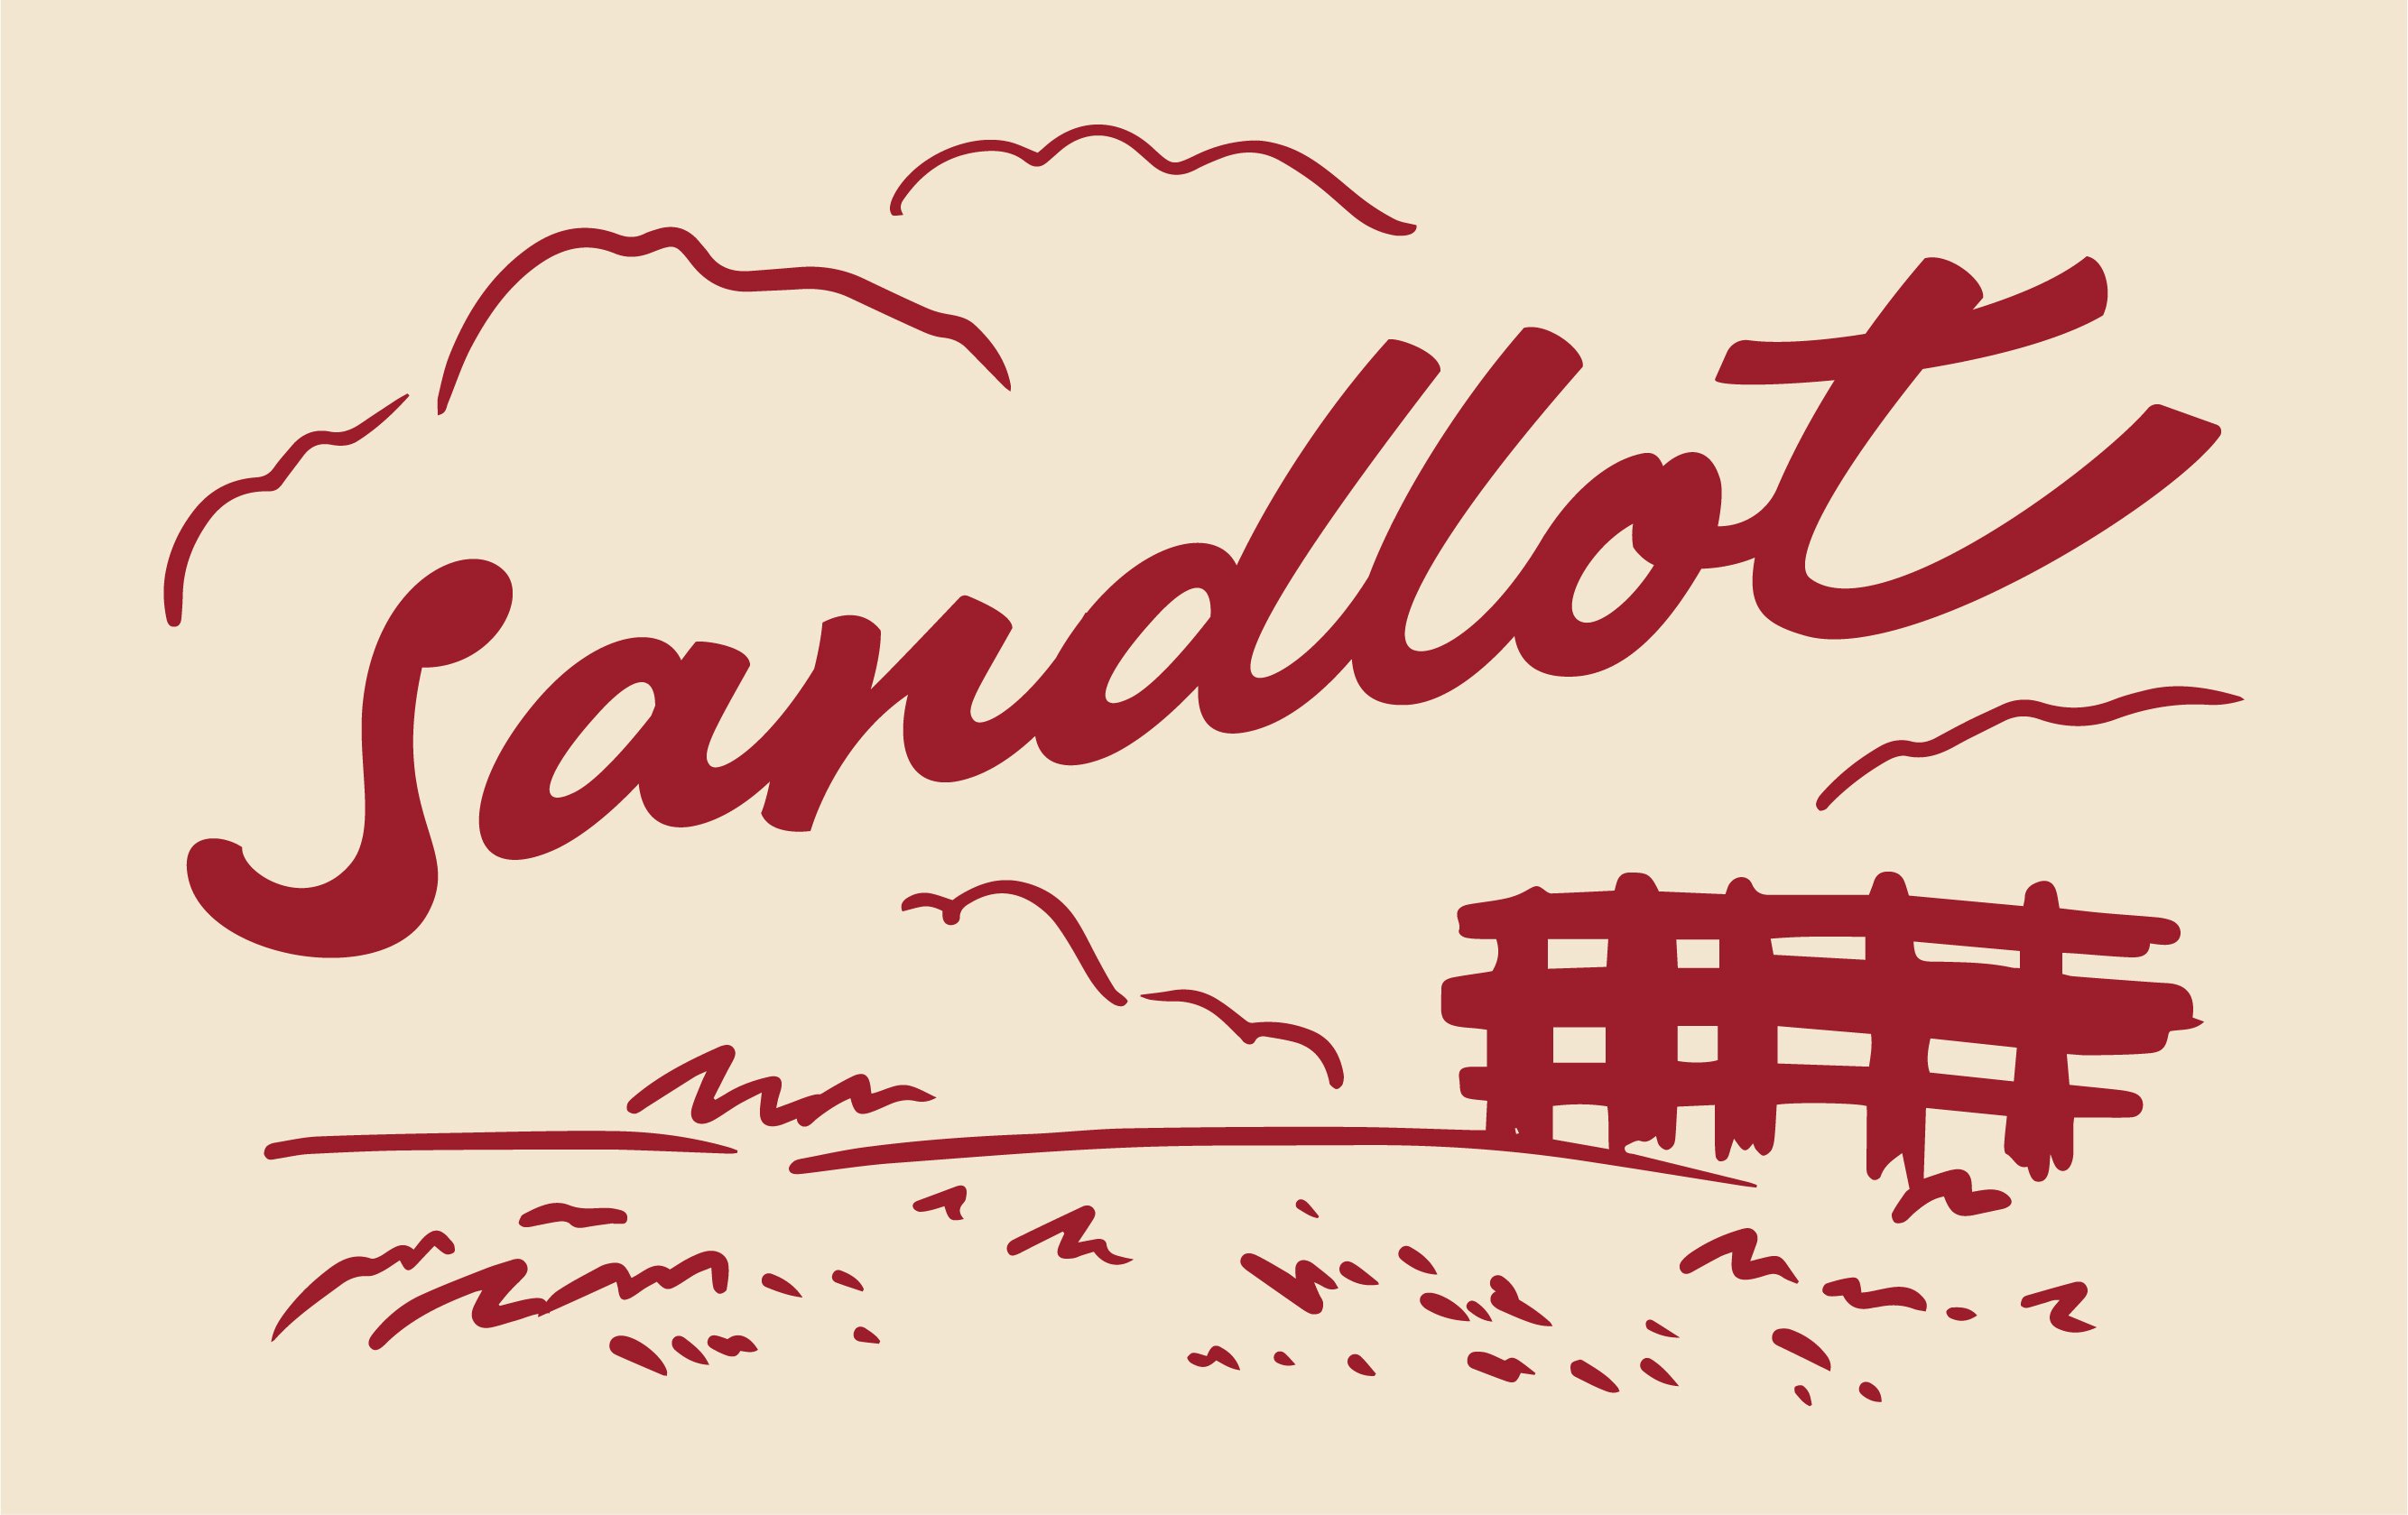 Sandlot [ɥå]